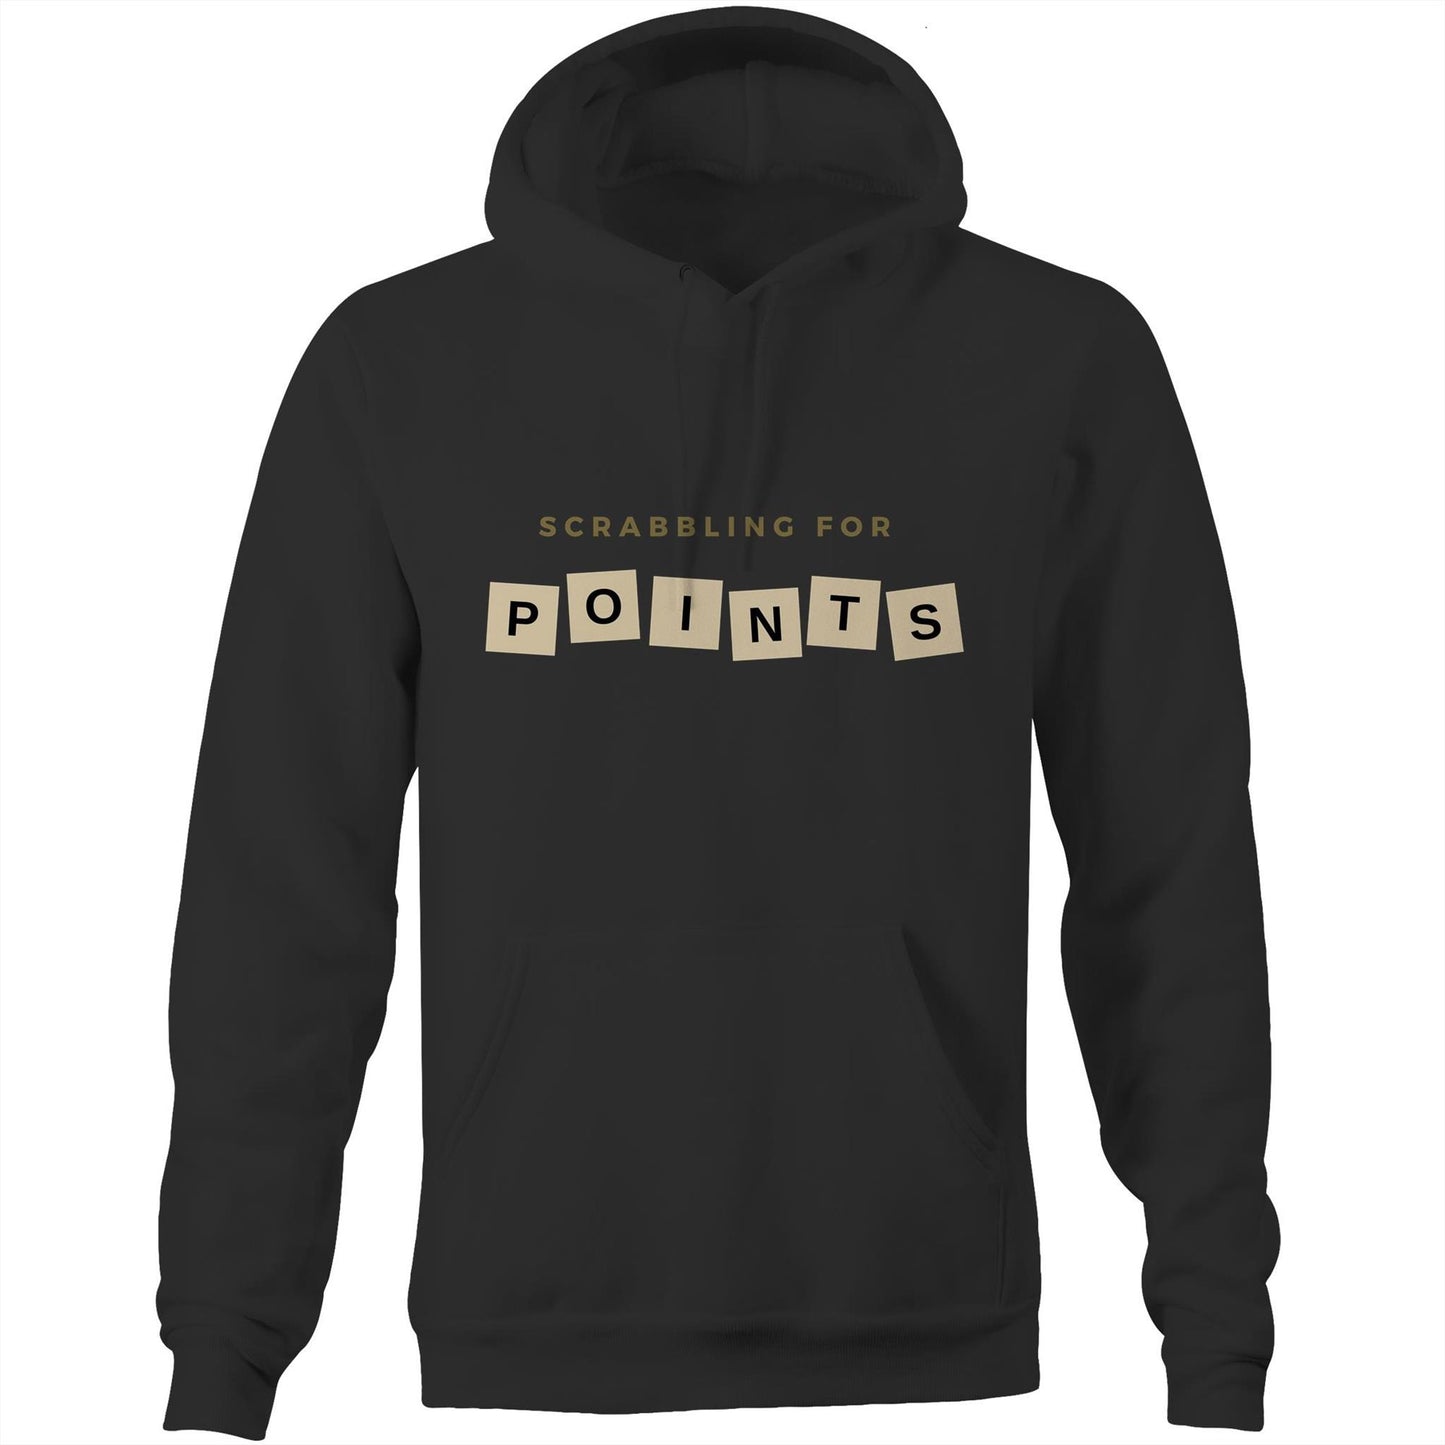 Scrabbling For Points - Pocket Hoodie Sweatshirt Black Hoodie Games